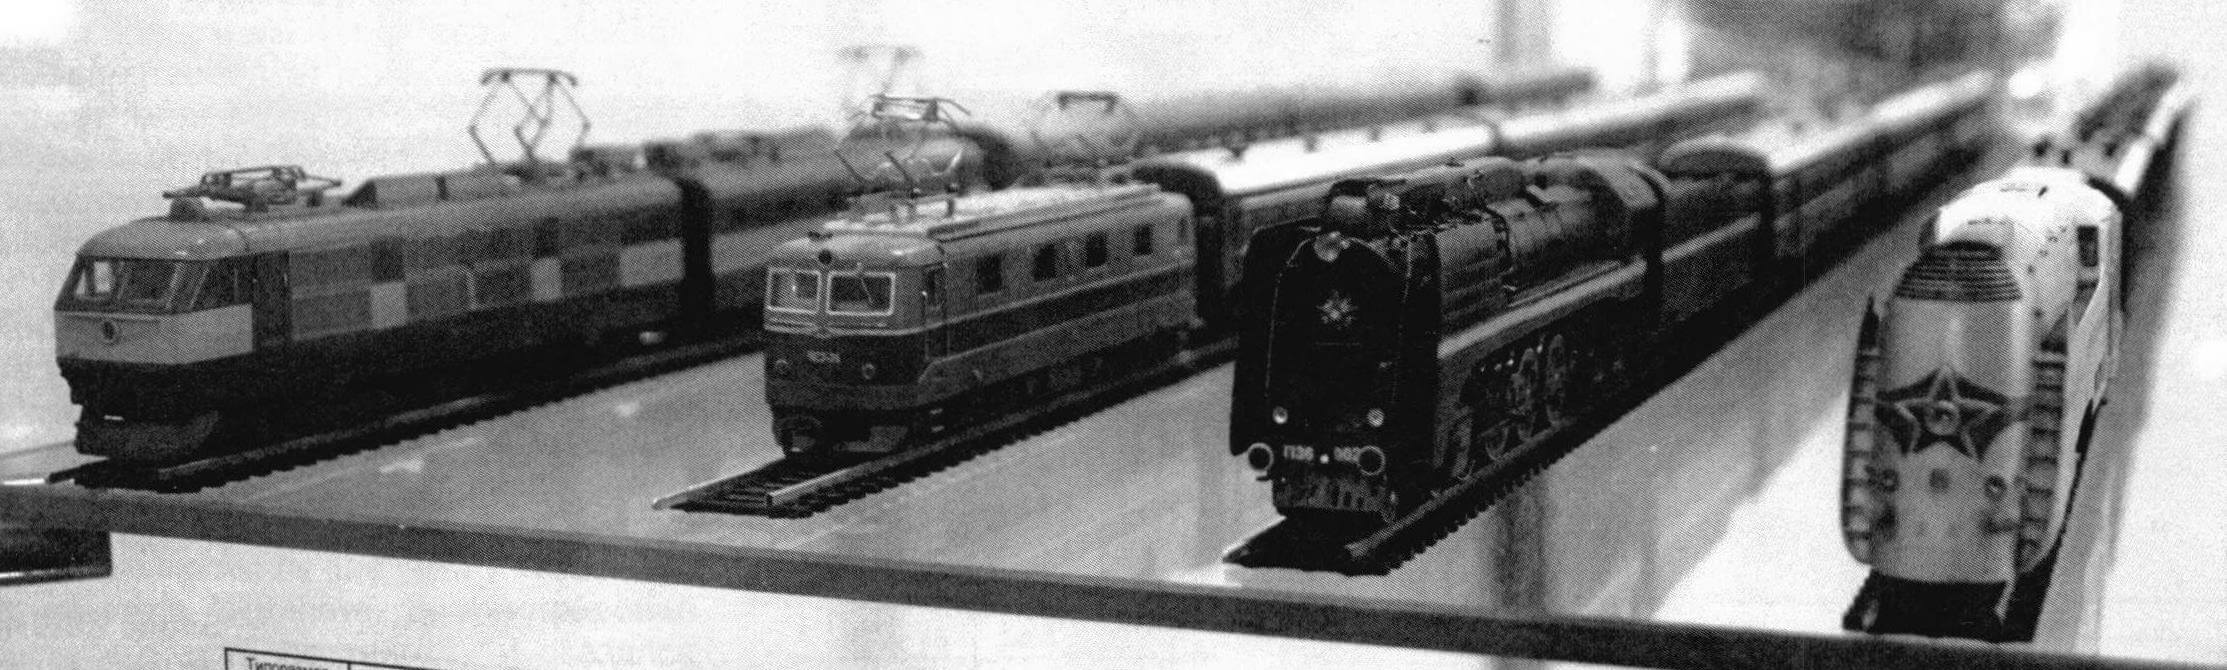 Модели поездов, в разное время работавших на магистрали Санкт-Петербург (Ленинград) - Москва. Масштаб 1:120, «Московский ТТ-клуб»